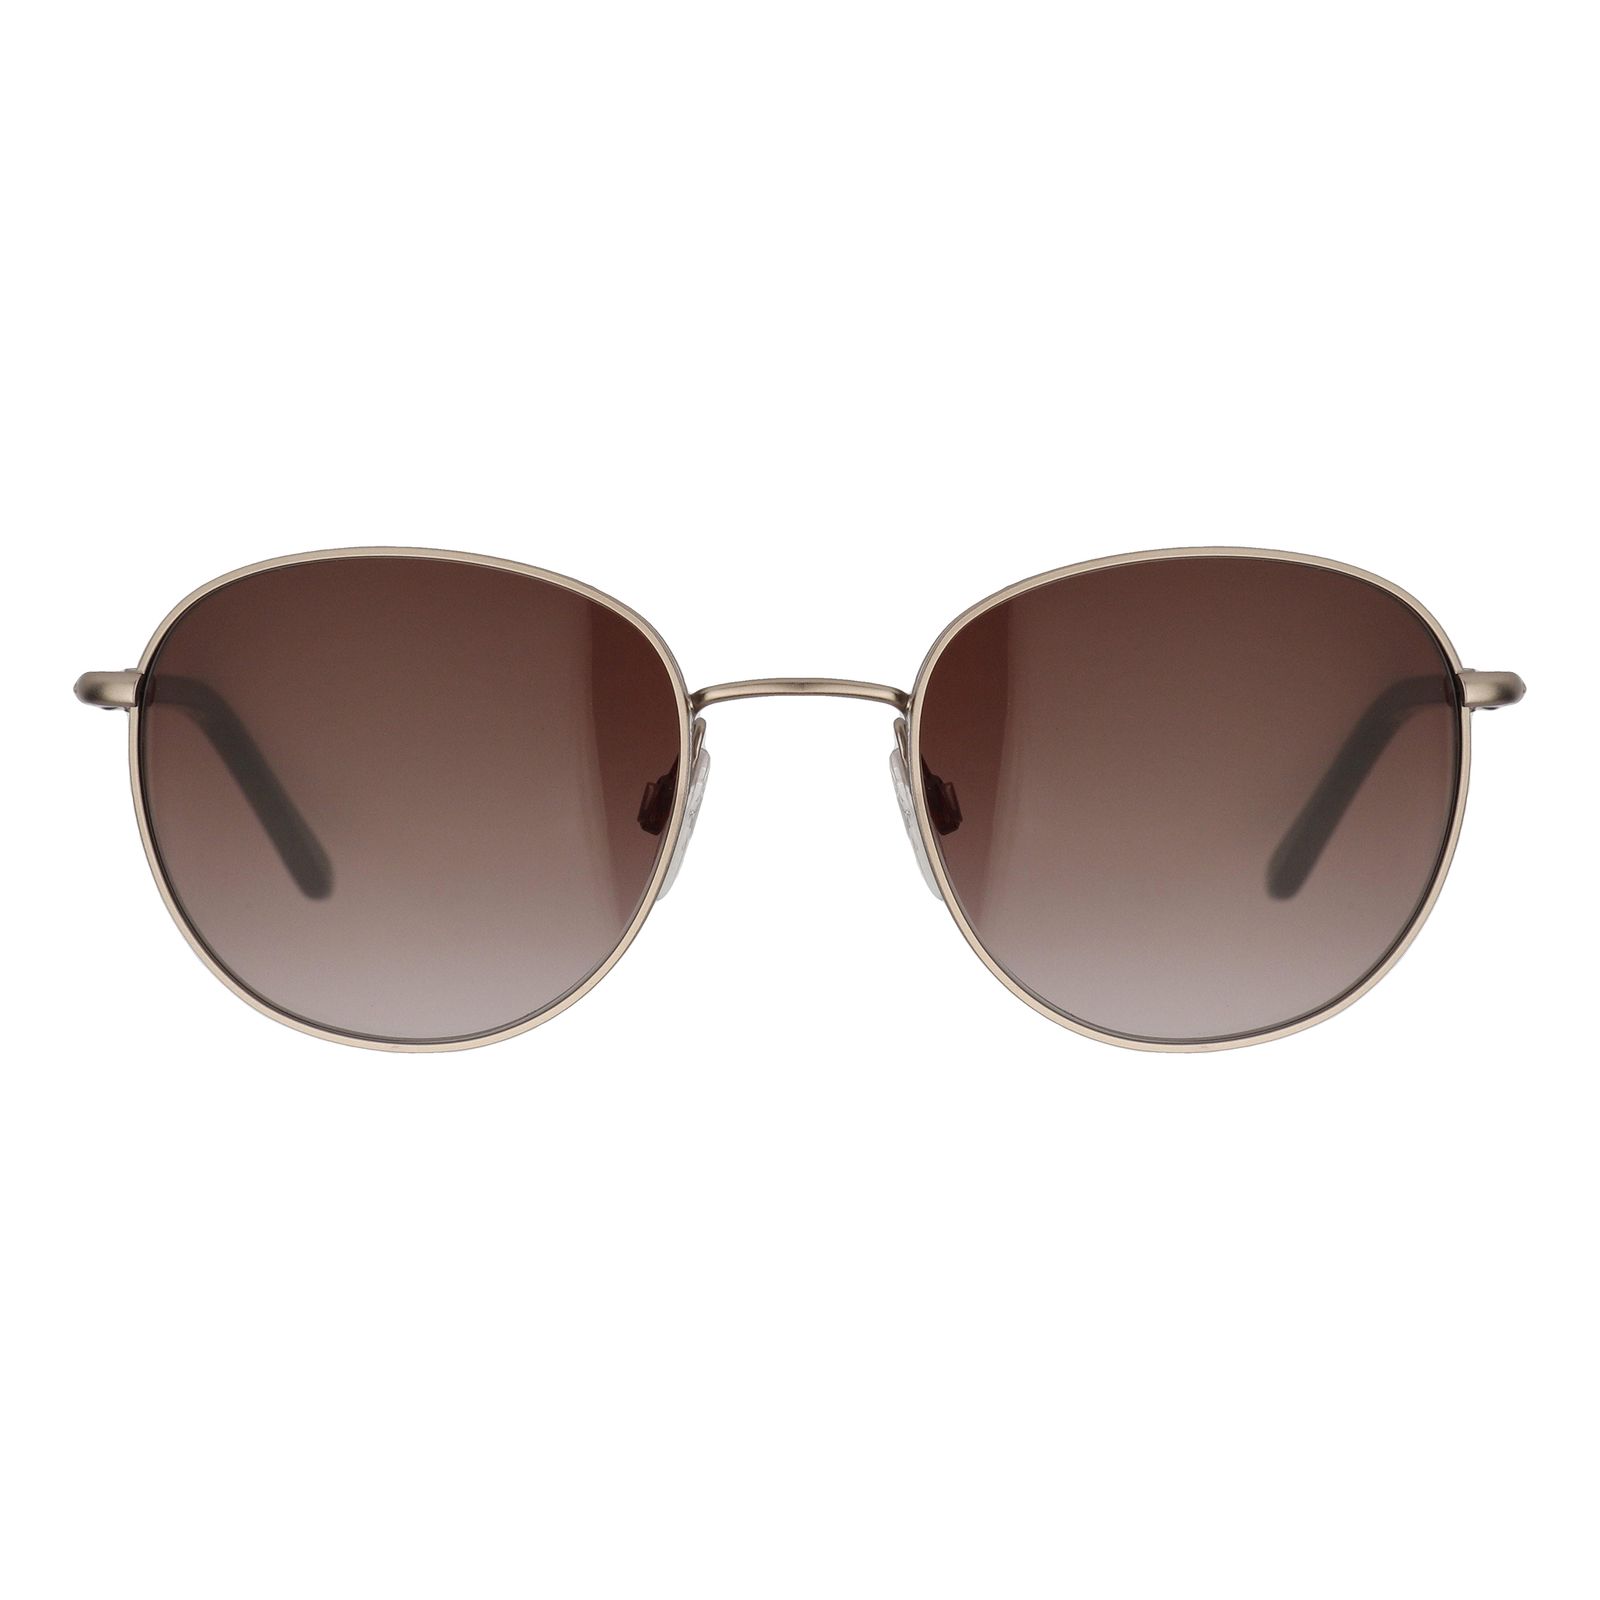 عینک آفتابی بتی بارکلی مدل 56068-421 -  - 1